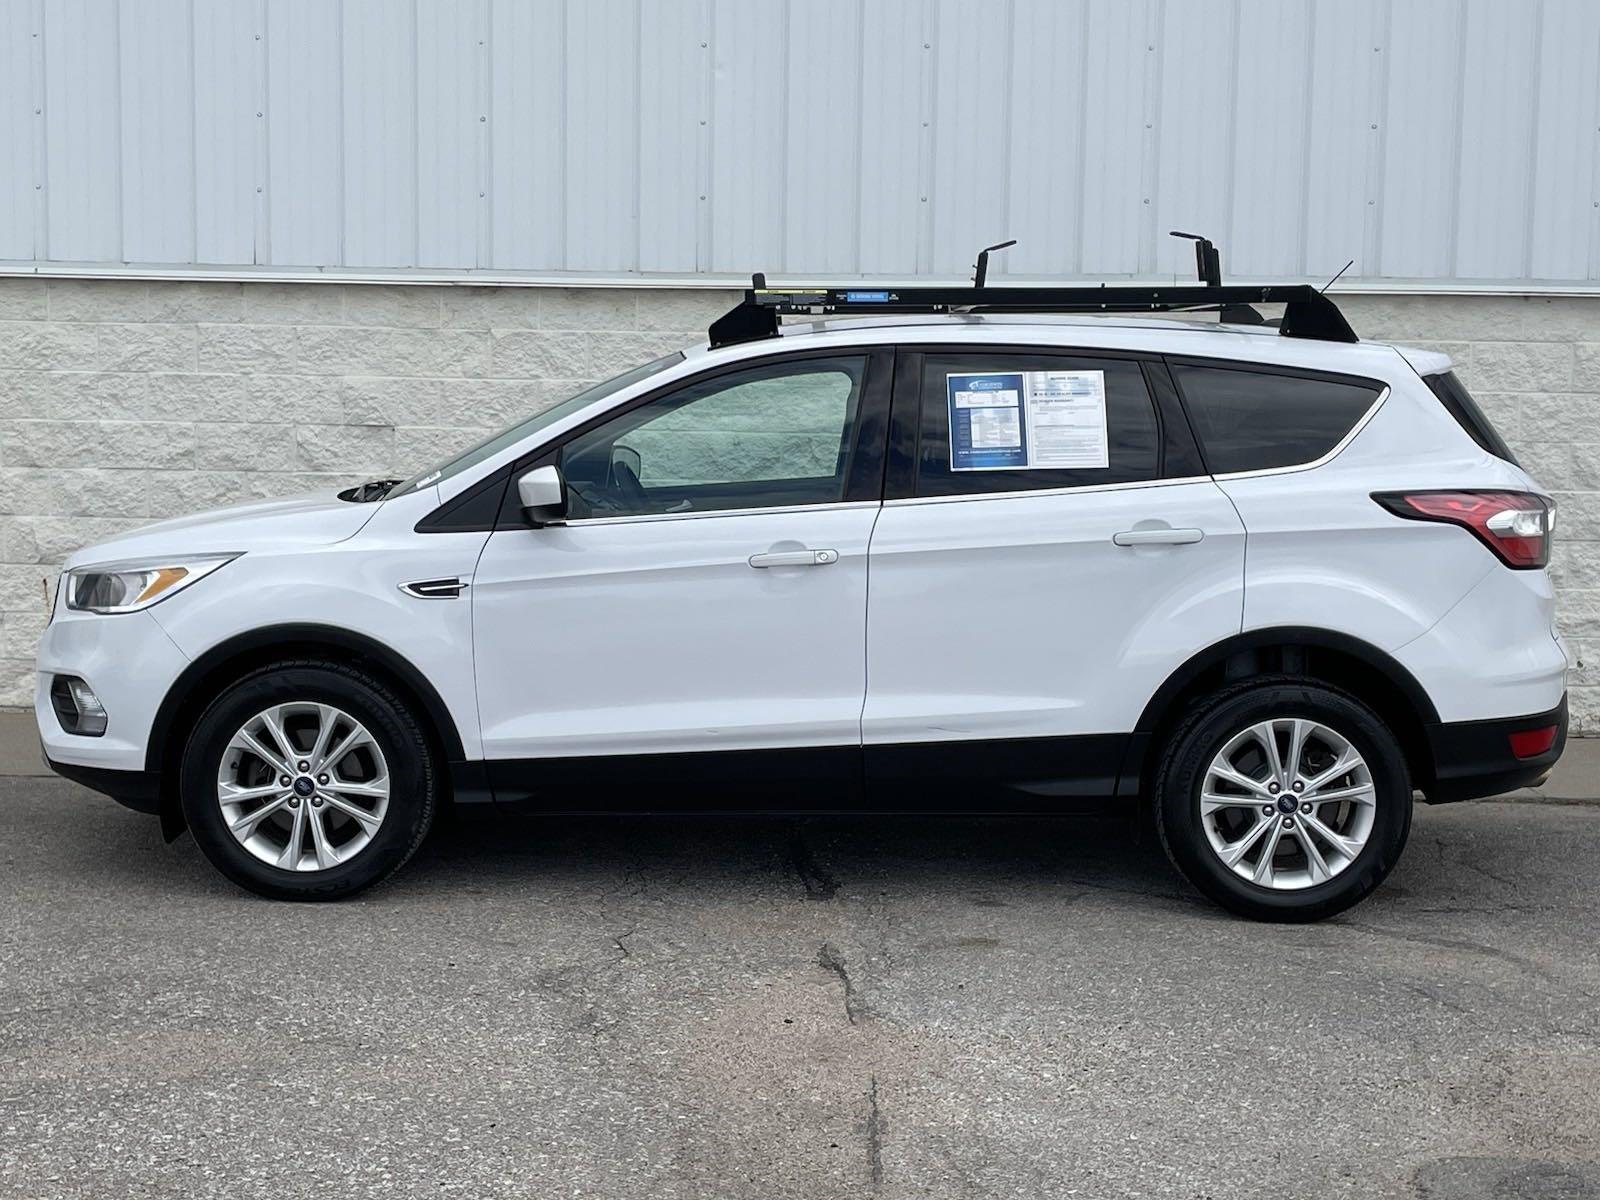 Used 2018 Ford Escape SE Sport Utility for sale in Lincoln NE